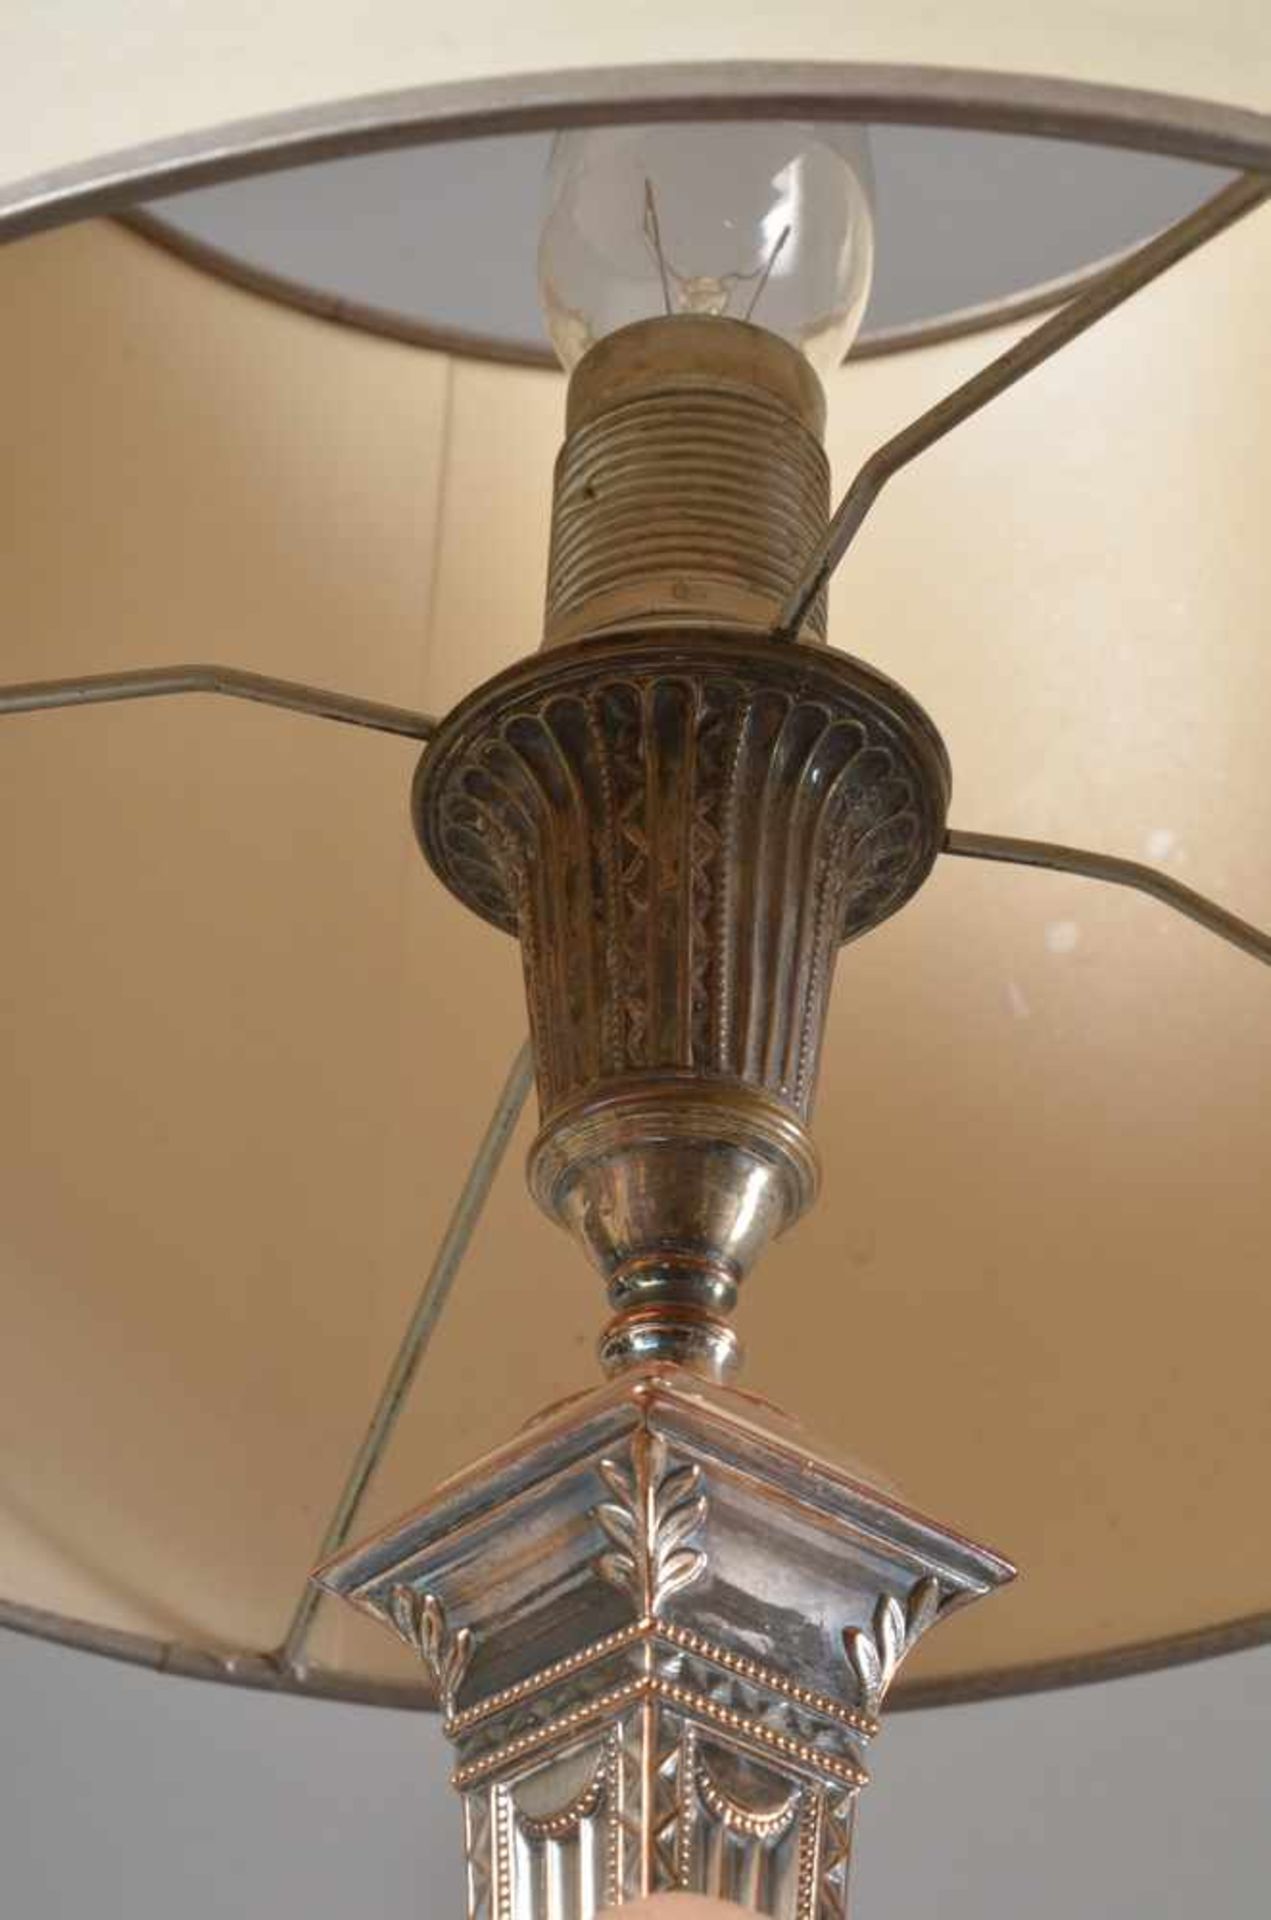 Englischer Leuchter als Lampe montiert, Copper plated, H. 30cm, etwas durchgeputzt - Bild 2 aus 2